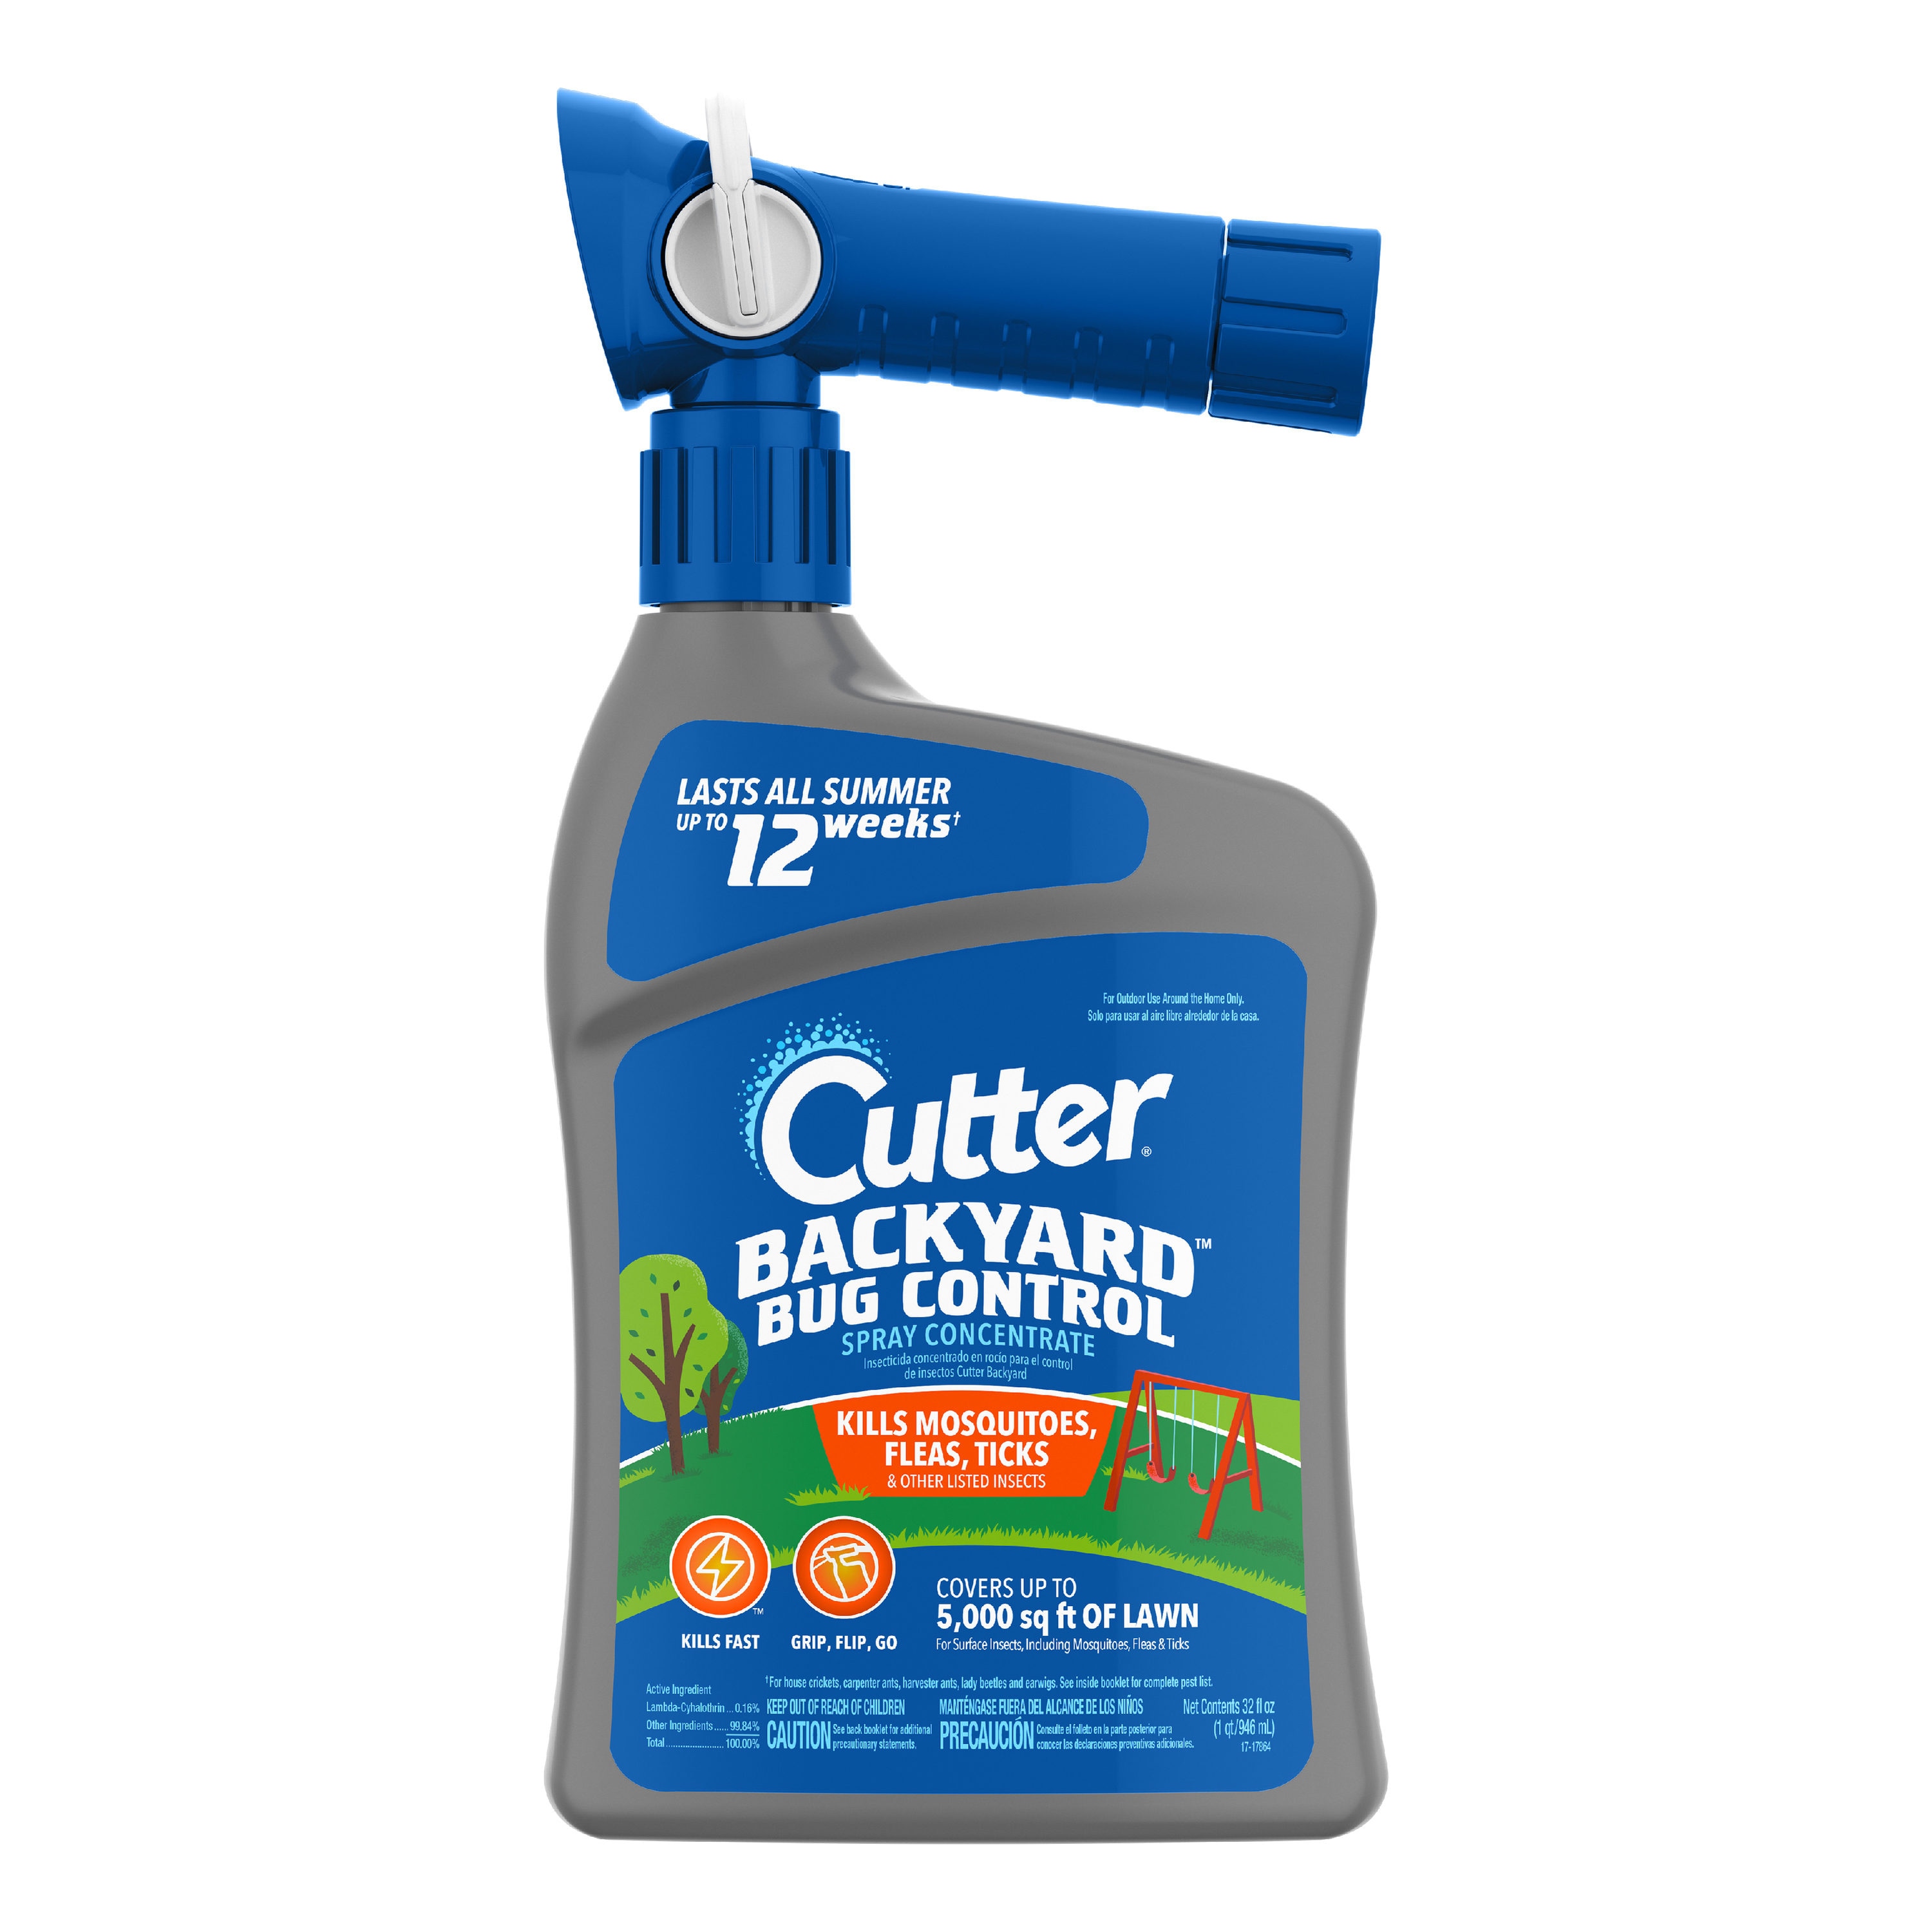 Cutter 32-fl oz Mosquito Backyard Bug Control Bug Spray